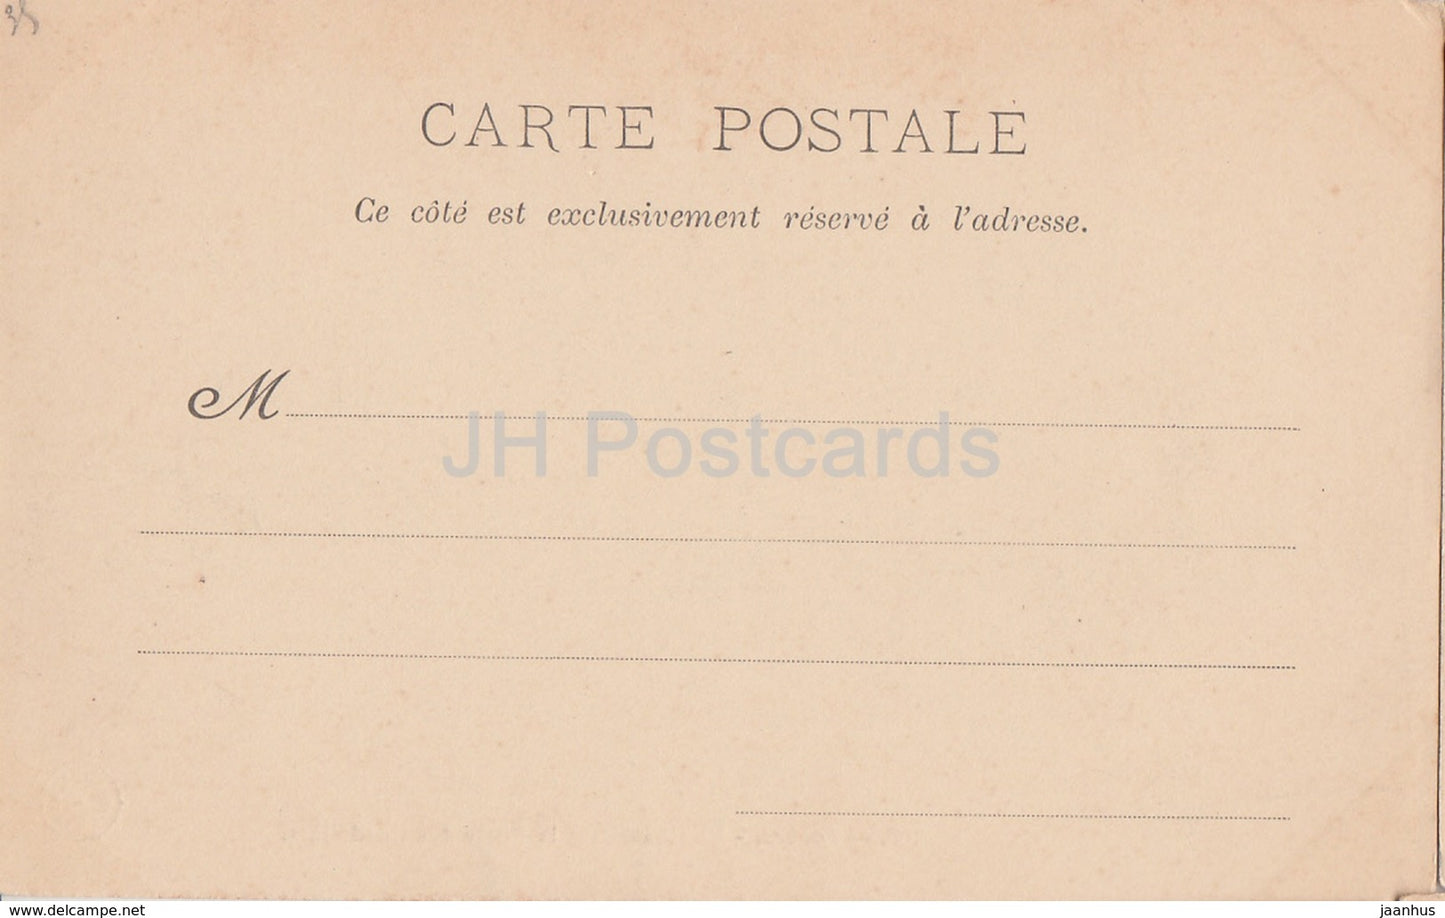 Loches - Le Chateau et la Porte des Cordeliers - castle - 106 - old postcard - France - unused